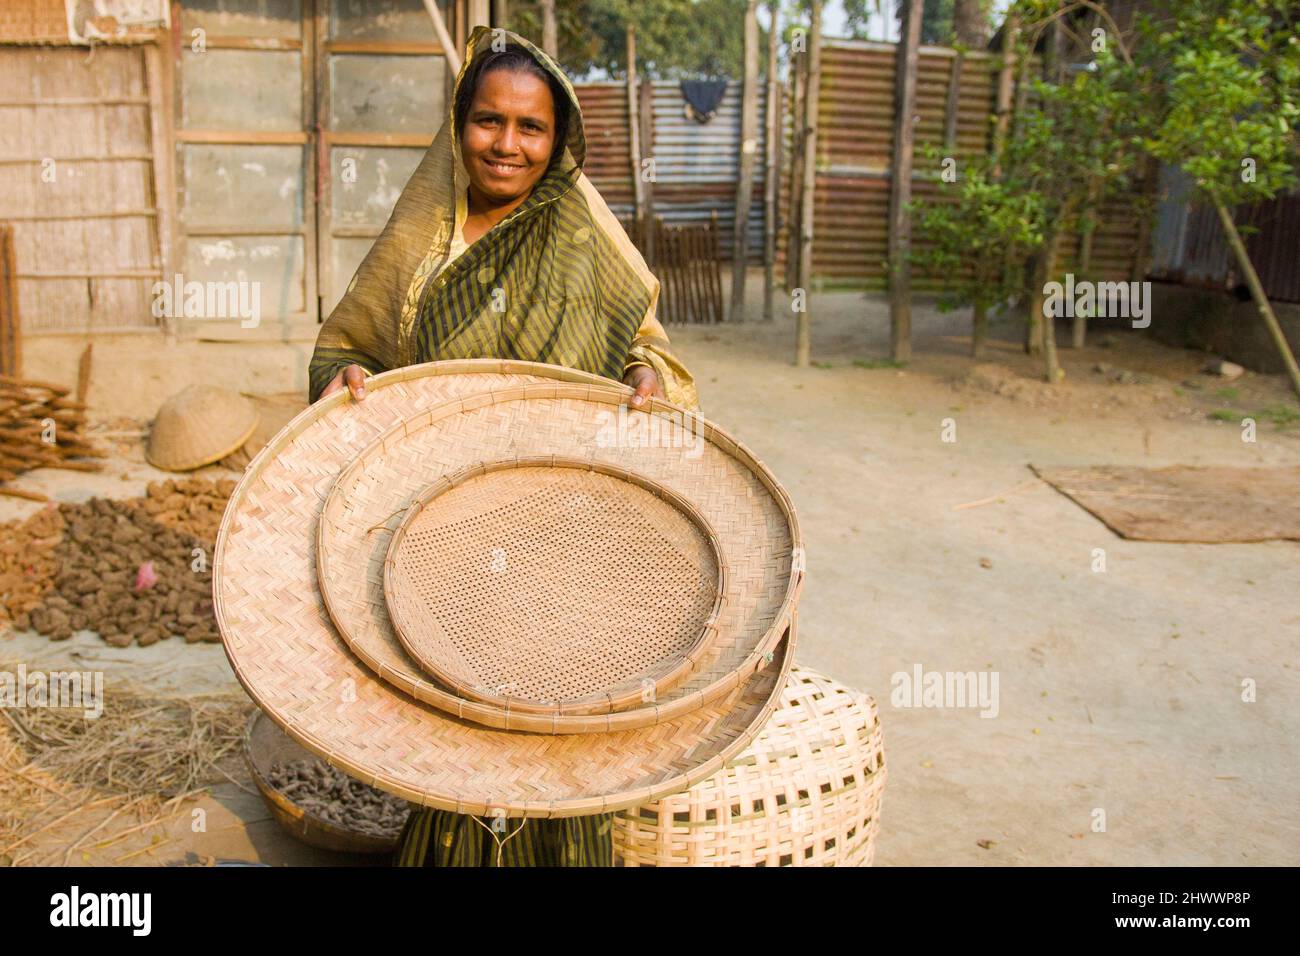 Un imprenditore donna sta mostrando il suo paniere fatto con bambù nel distretto di Netrkona del Bangladesh. Sta anche aiutando altre donne a guadagnare denaro. Foto Stock